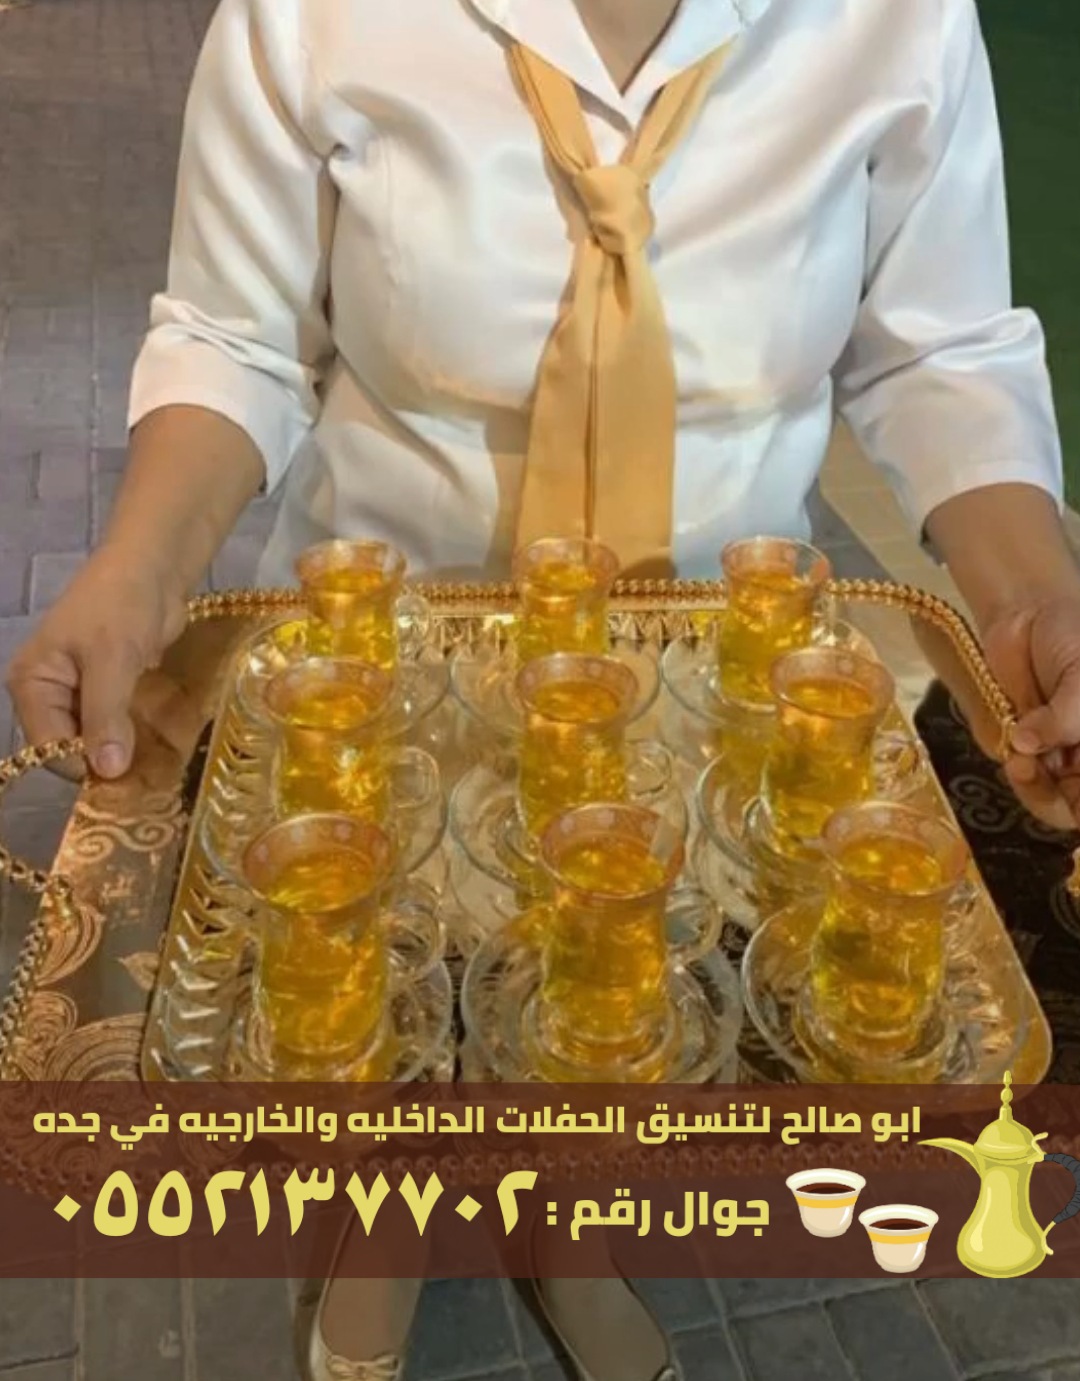 صبابين قهوة و صبابات في جدة, 0552137702 P_2456evv6f3